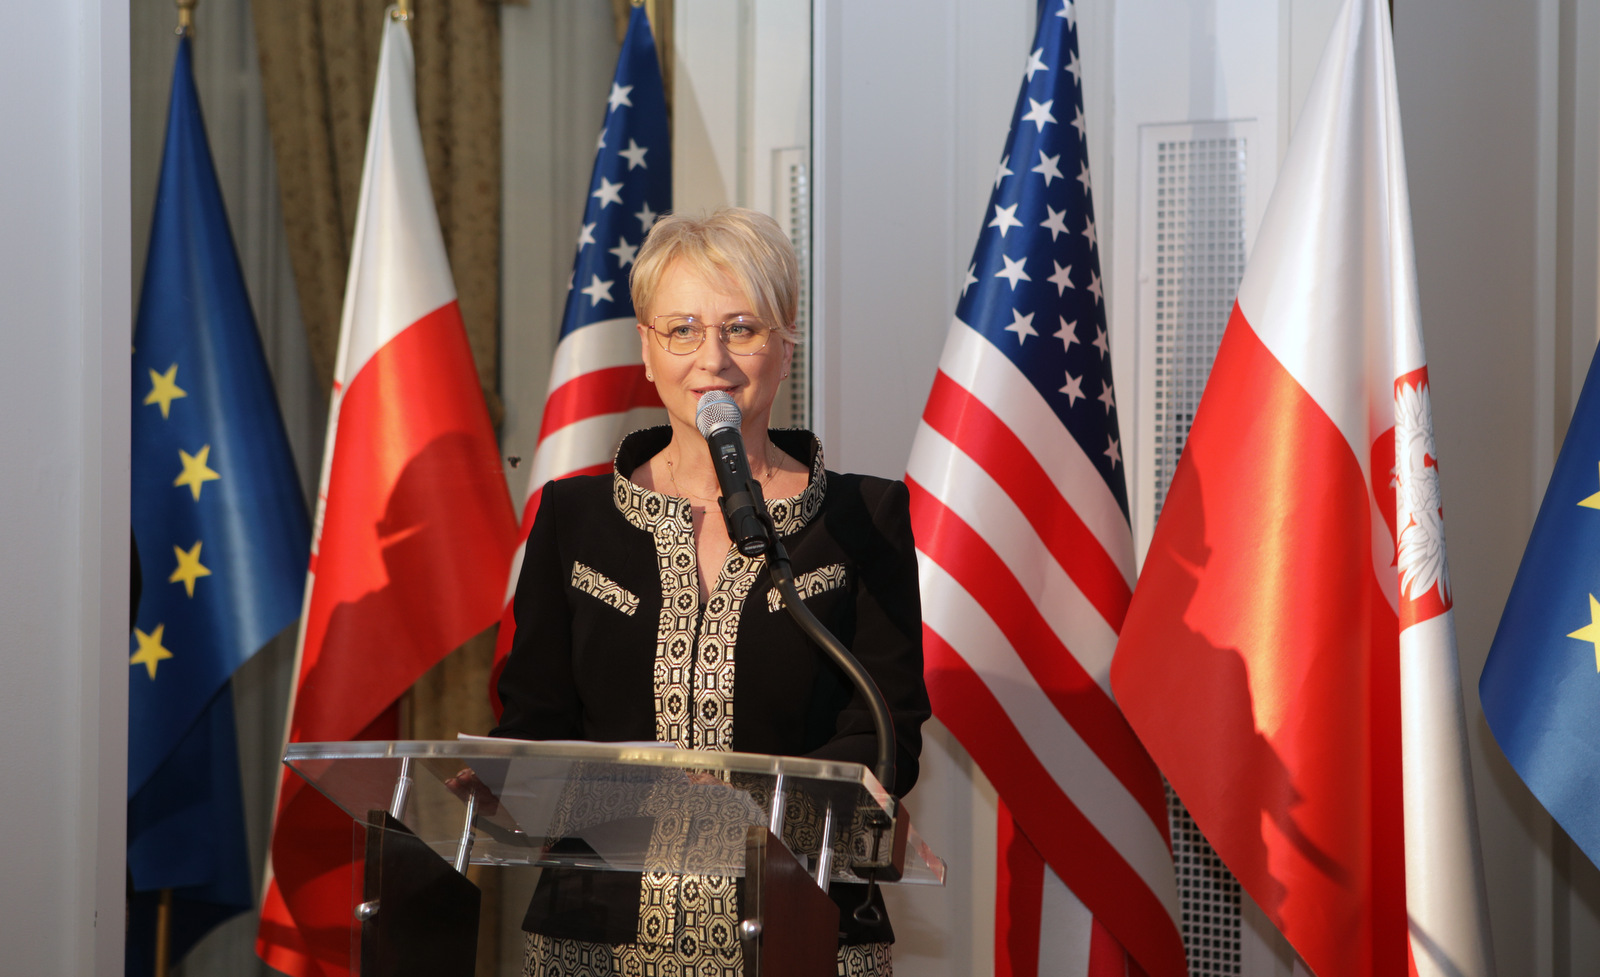 Wice Przewodnicząca sejmiku małopolskiego Iwona Gibas w ekskluzywnej garsonce z De Marco